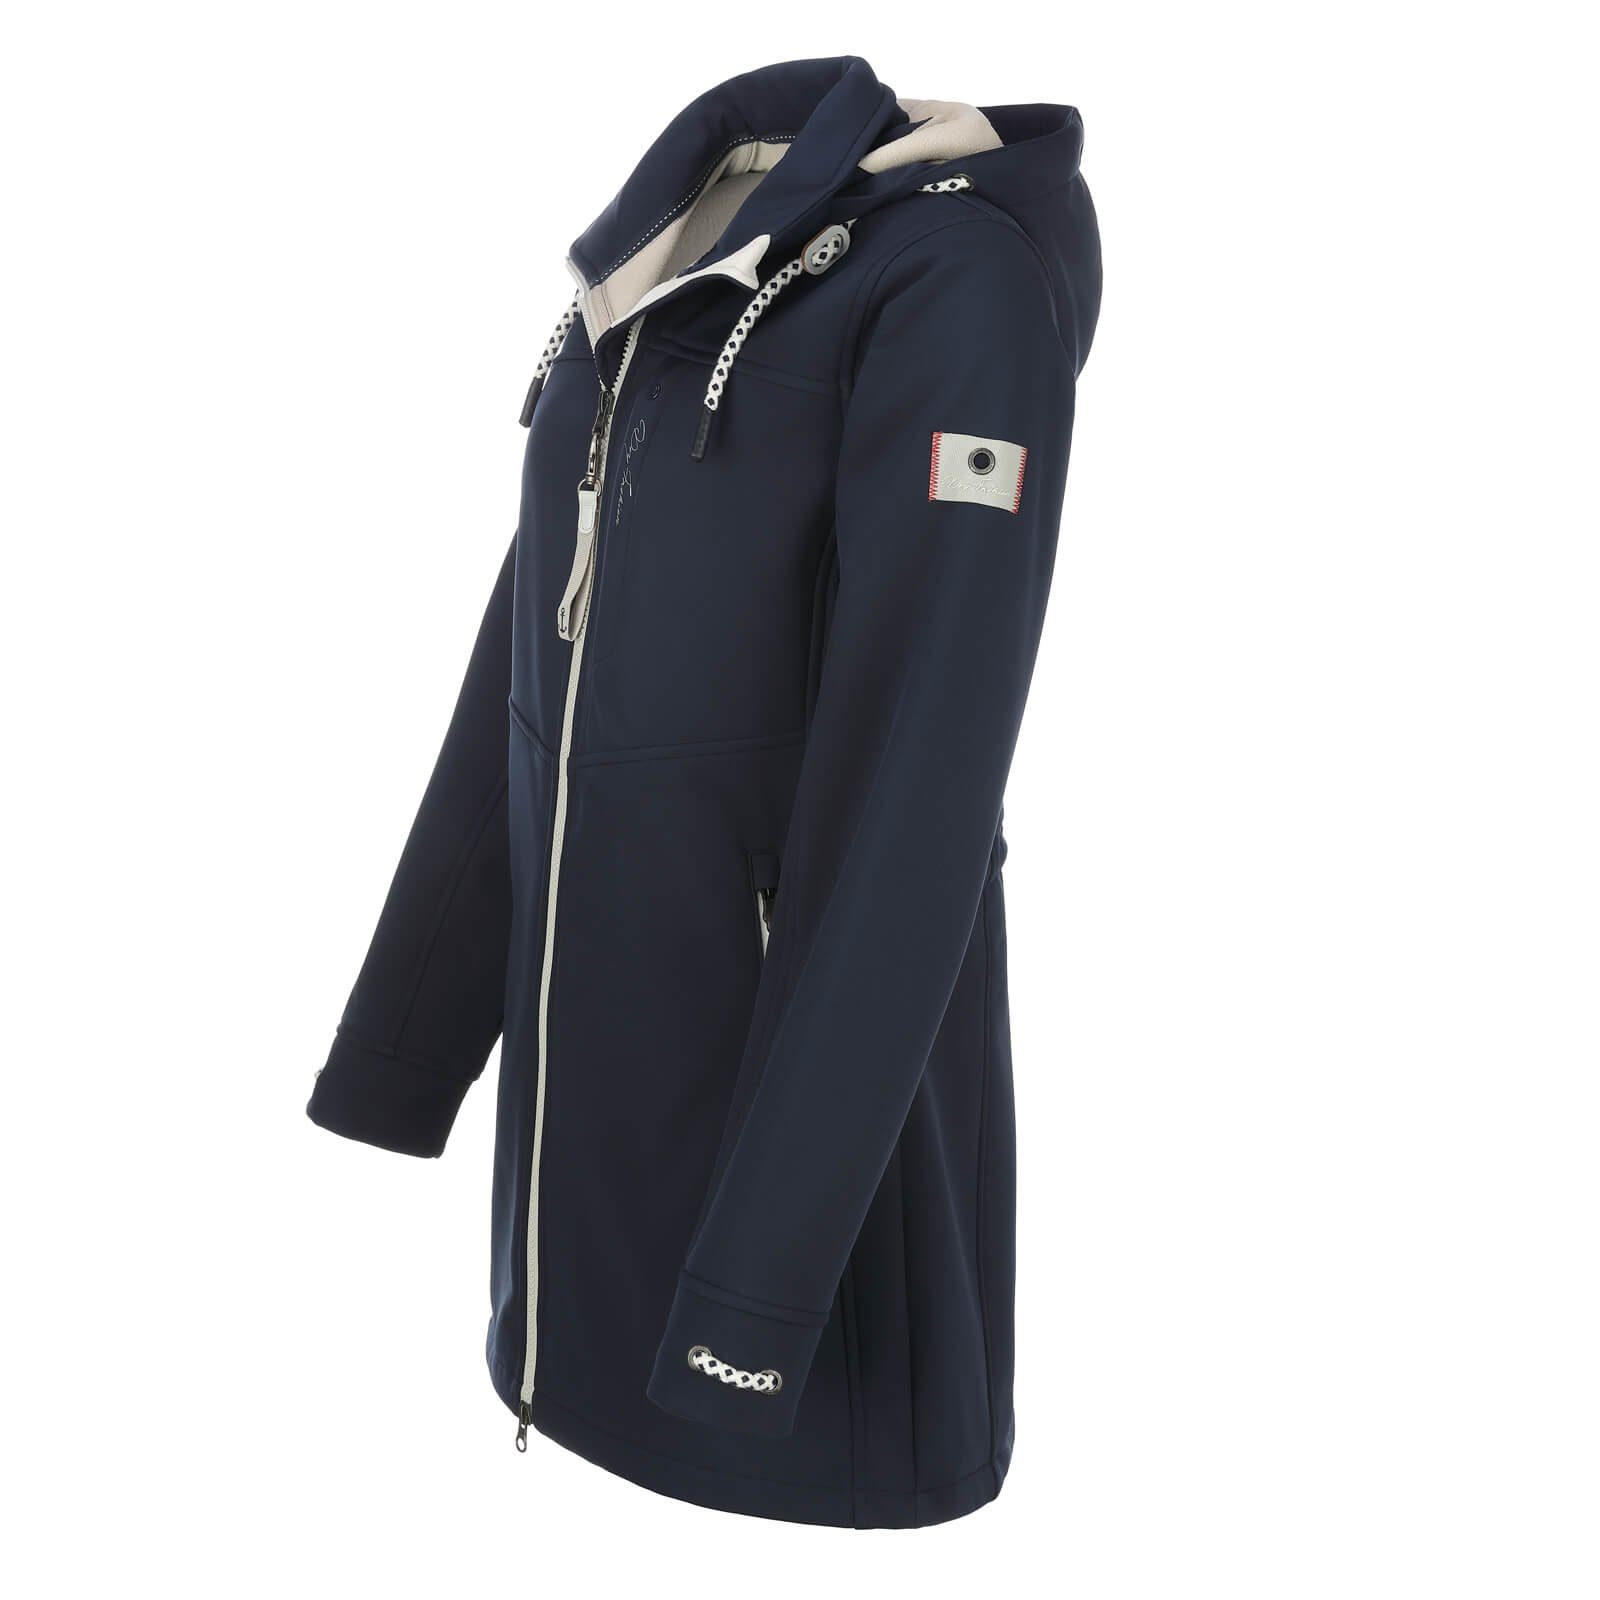 Softshelljacke Softshellmantel Softshell Outdoor-Jacke Rerik Dry - Damen Fashion Mantel navy